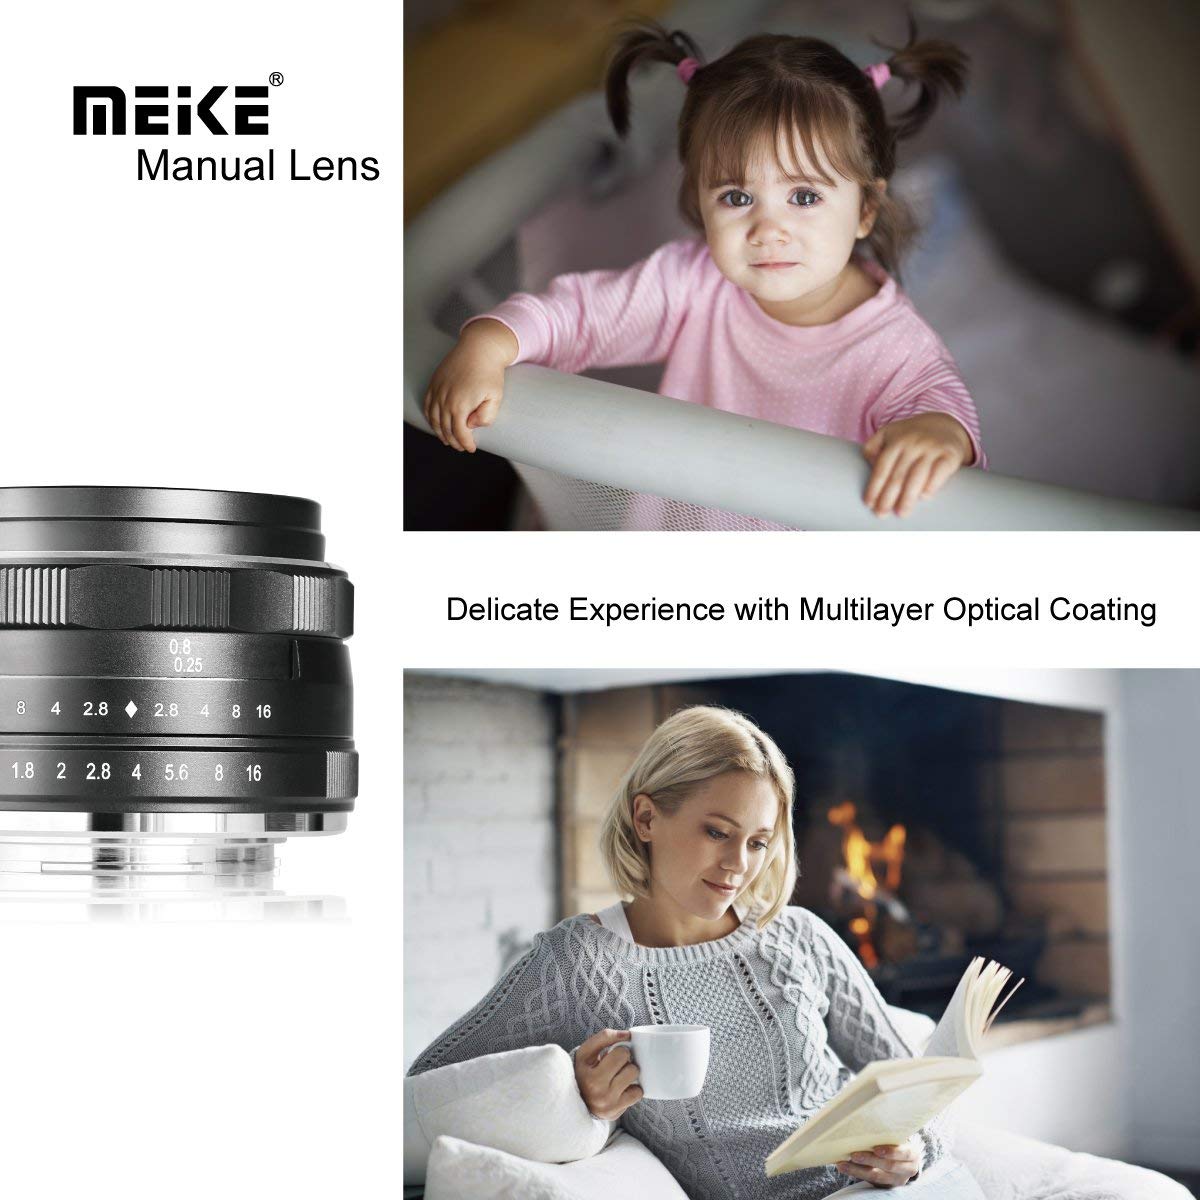 Meike 25mm f/1.8 Large Aperture Manual Focus Prime Lens Fuji X-Mount Mirrorless Cameras